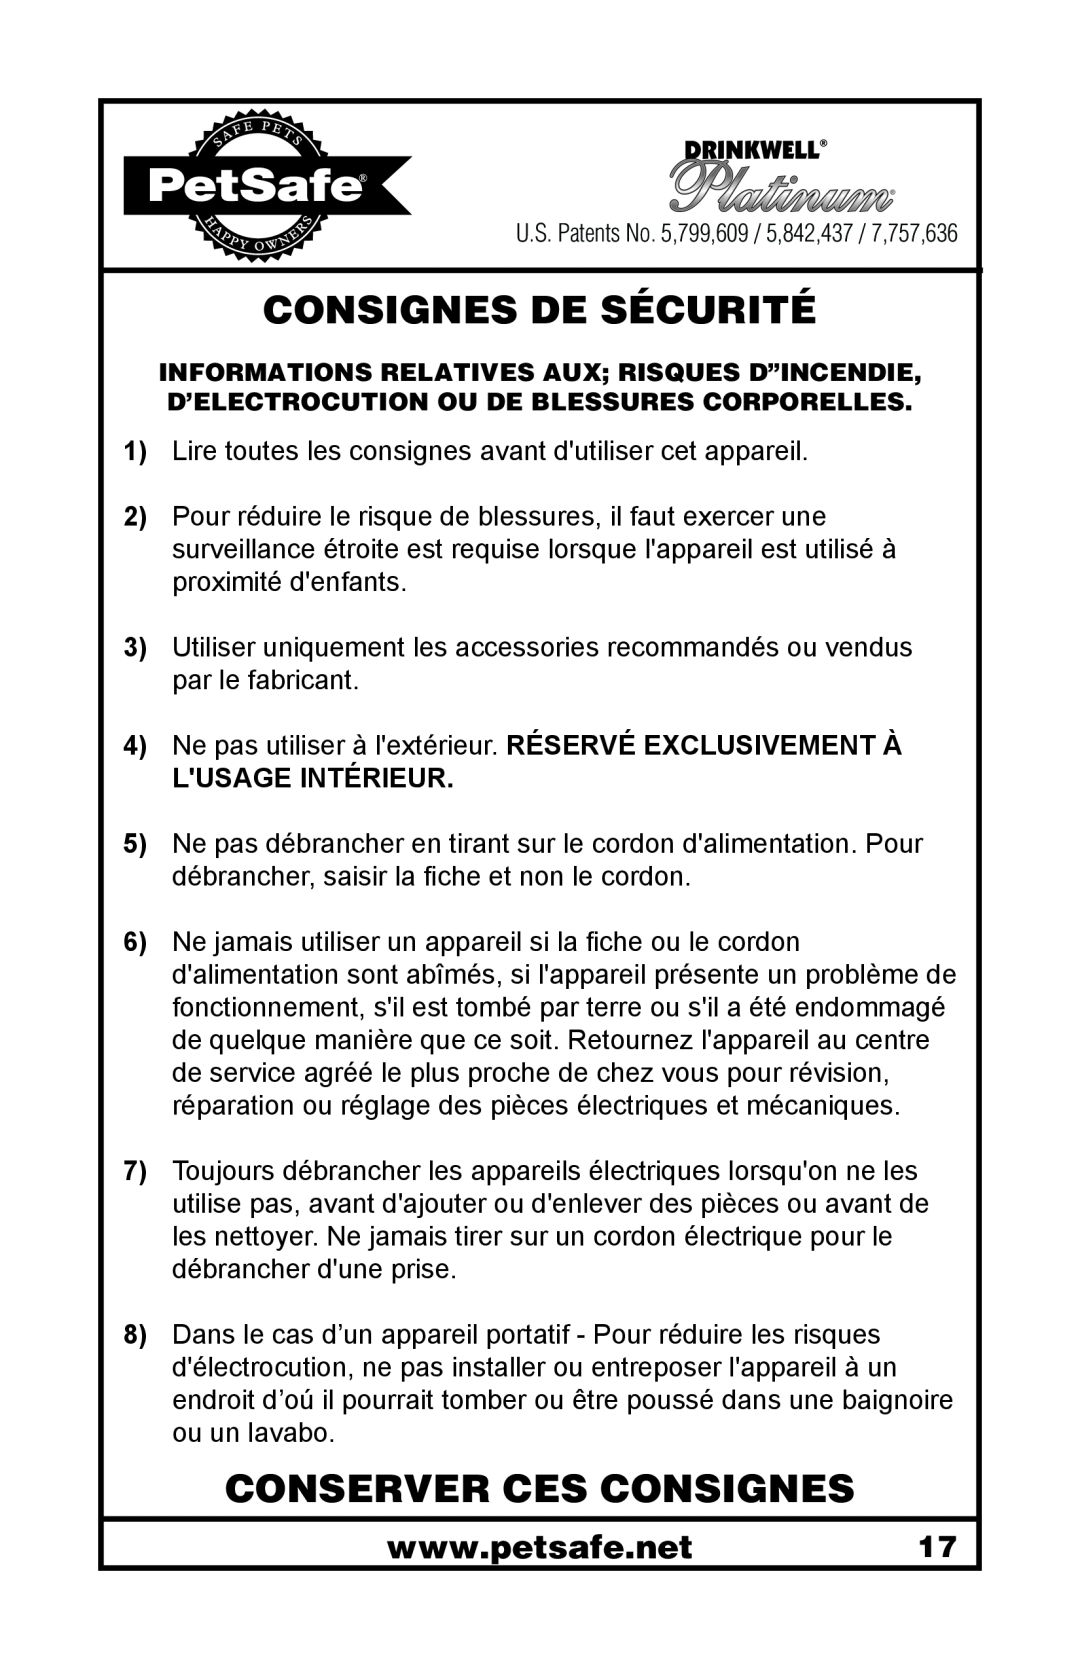 Petsafe 400-1255-19 manuel dutilisation Consignes De Sécurité, Conserver Ces Consignes, Lusage Intérieur 